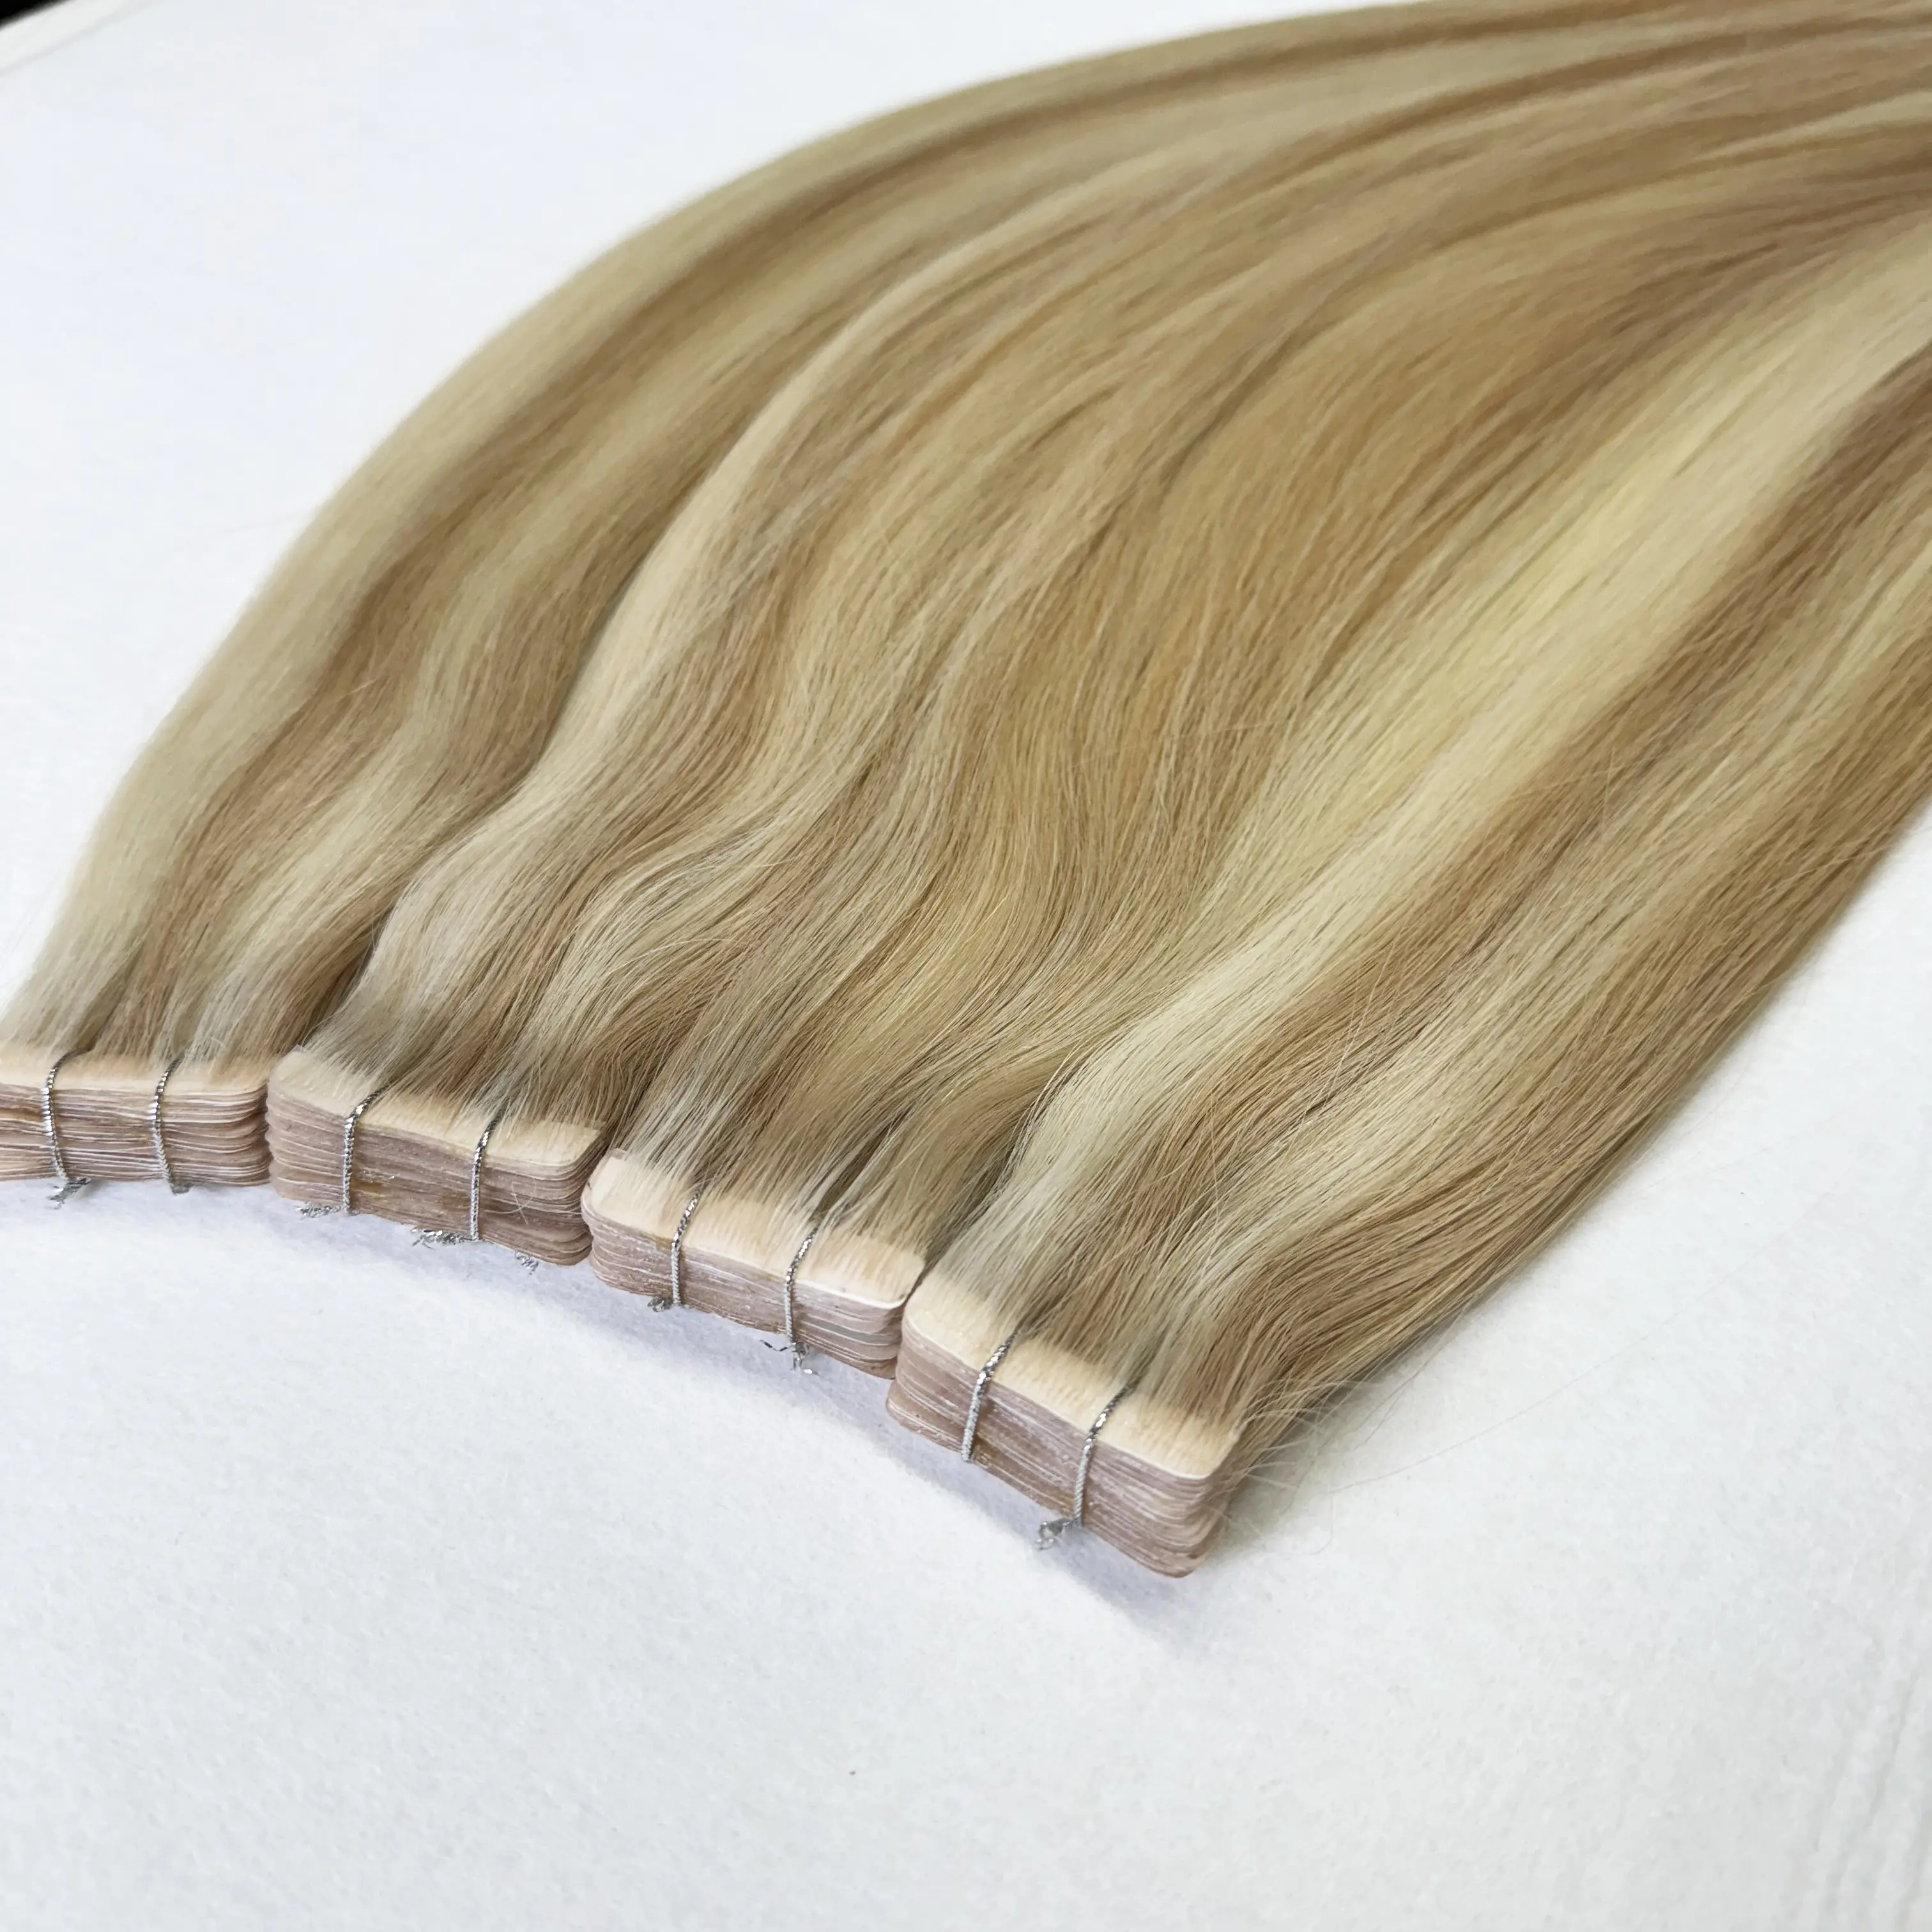 Vente en gros cheveux frisés crépus 100% naturel brut birman vierge extension humaine ruban invisible dans les extensions